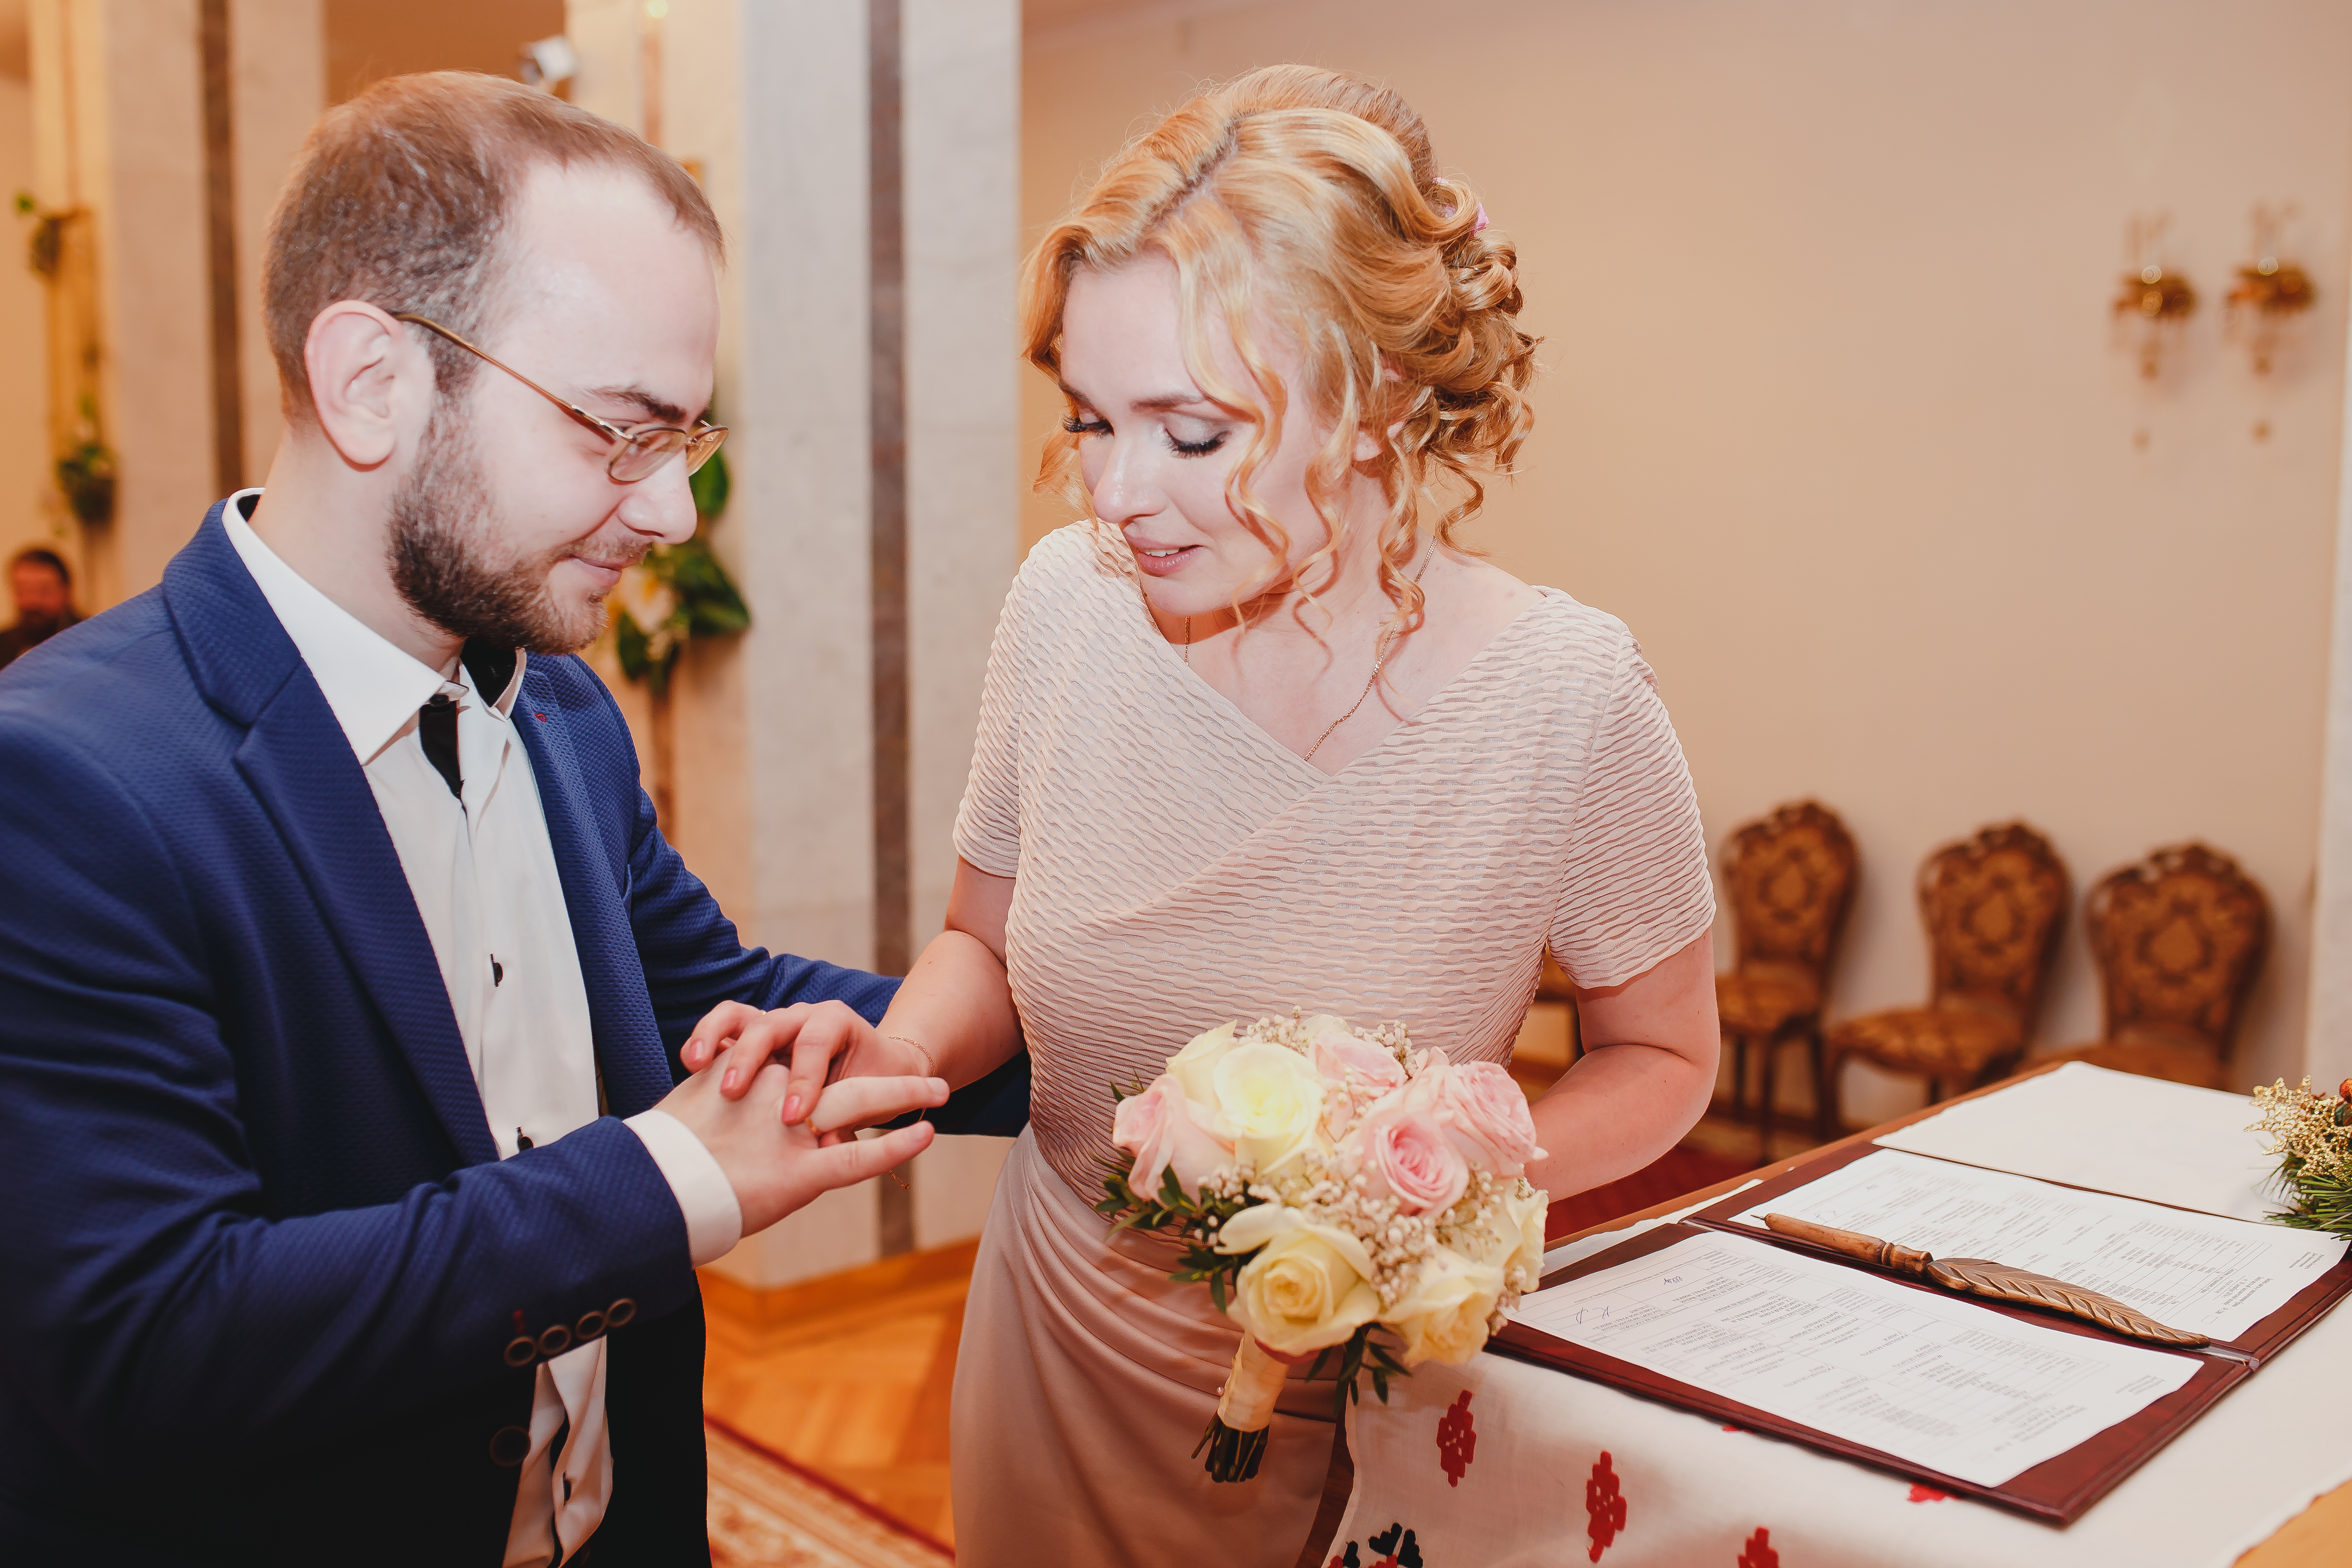 Какая красивая невеста! В сеть попало первое свадебное фото Федора Бондарчука и Паулины Андреевой